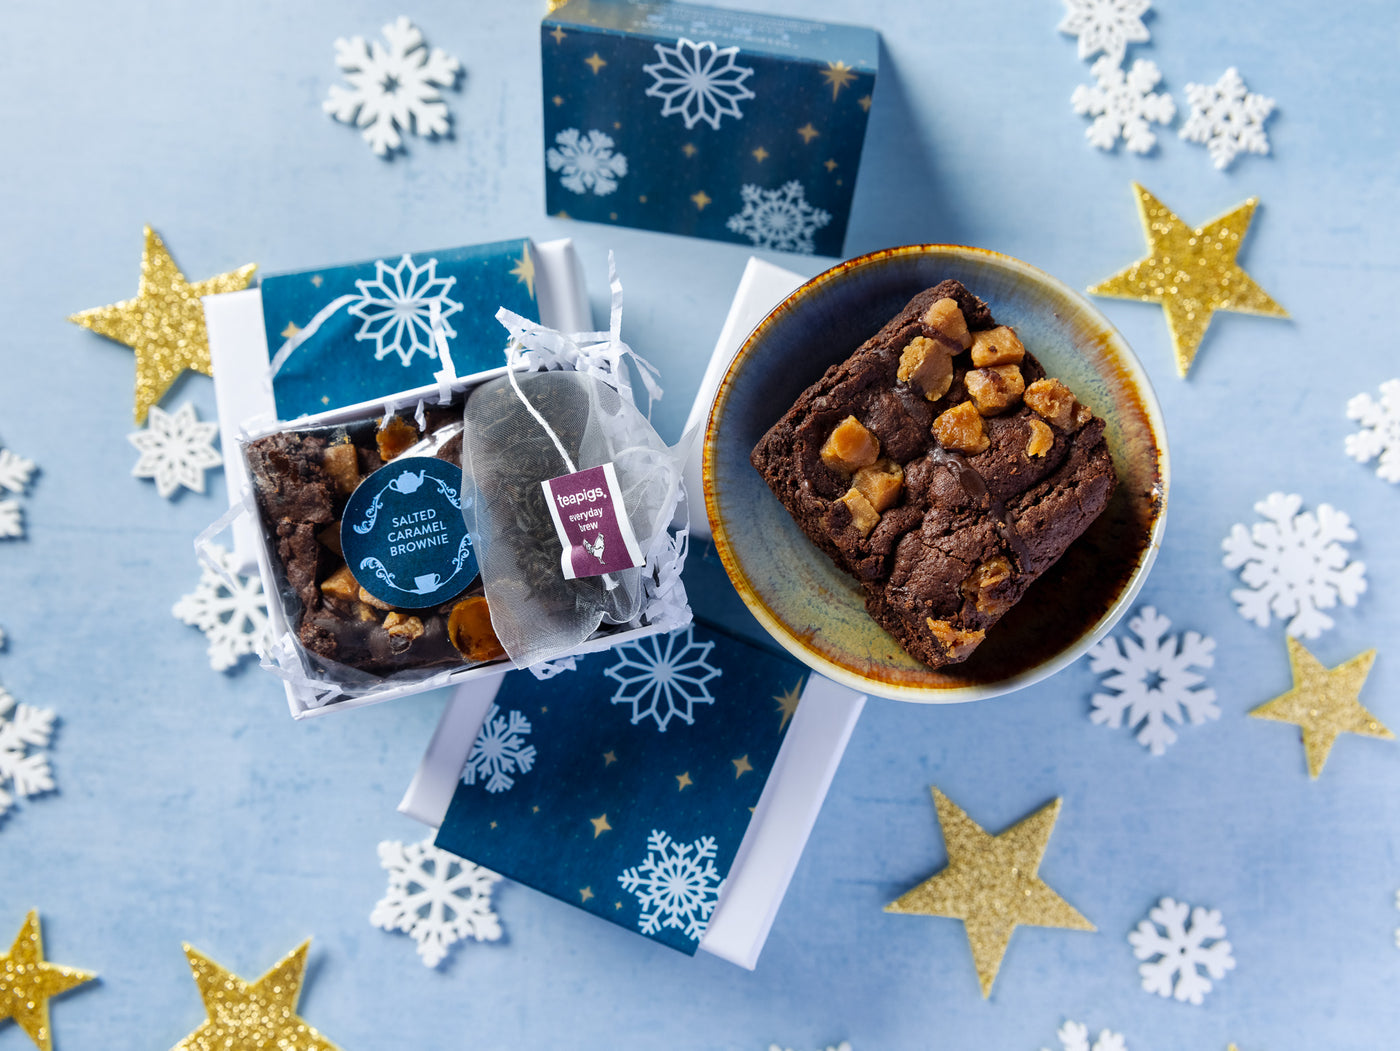 'Snowflakes' Mini Salted Caramel Brownie & Tea